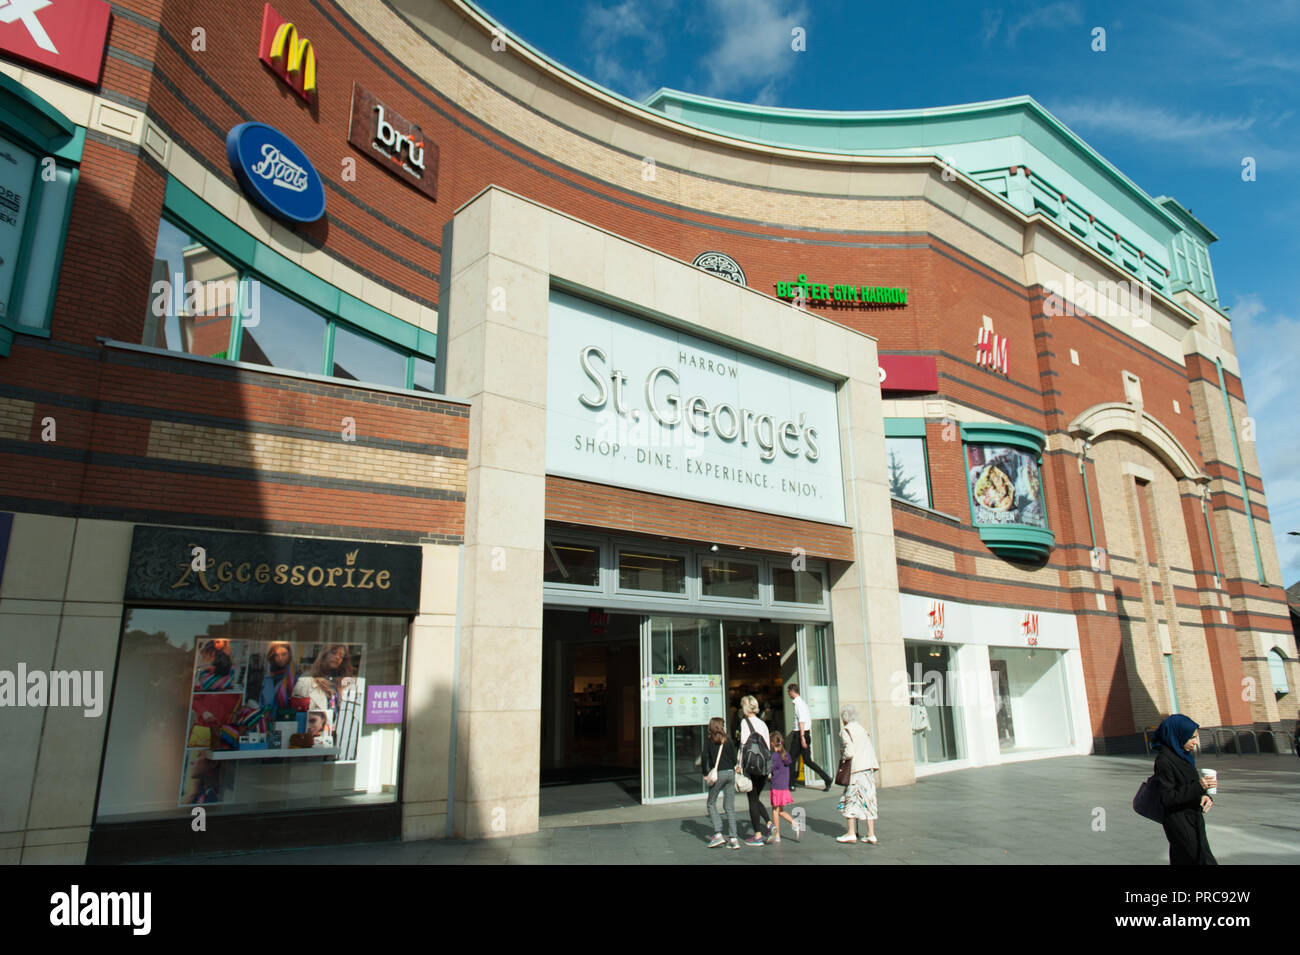 St George's centro comercial en el barrio de Harrow, en el noroeste de  Londres Fotografía de stock - Alamy